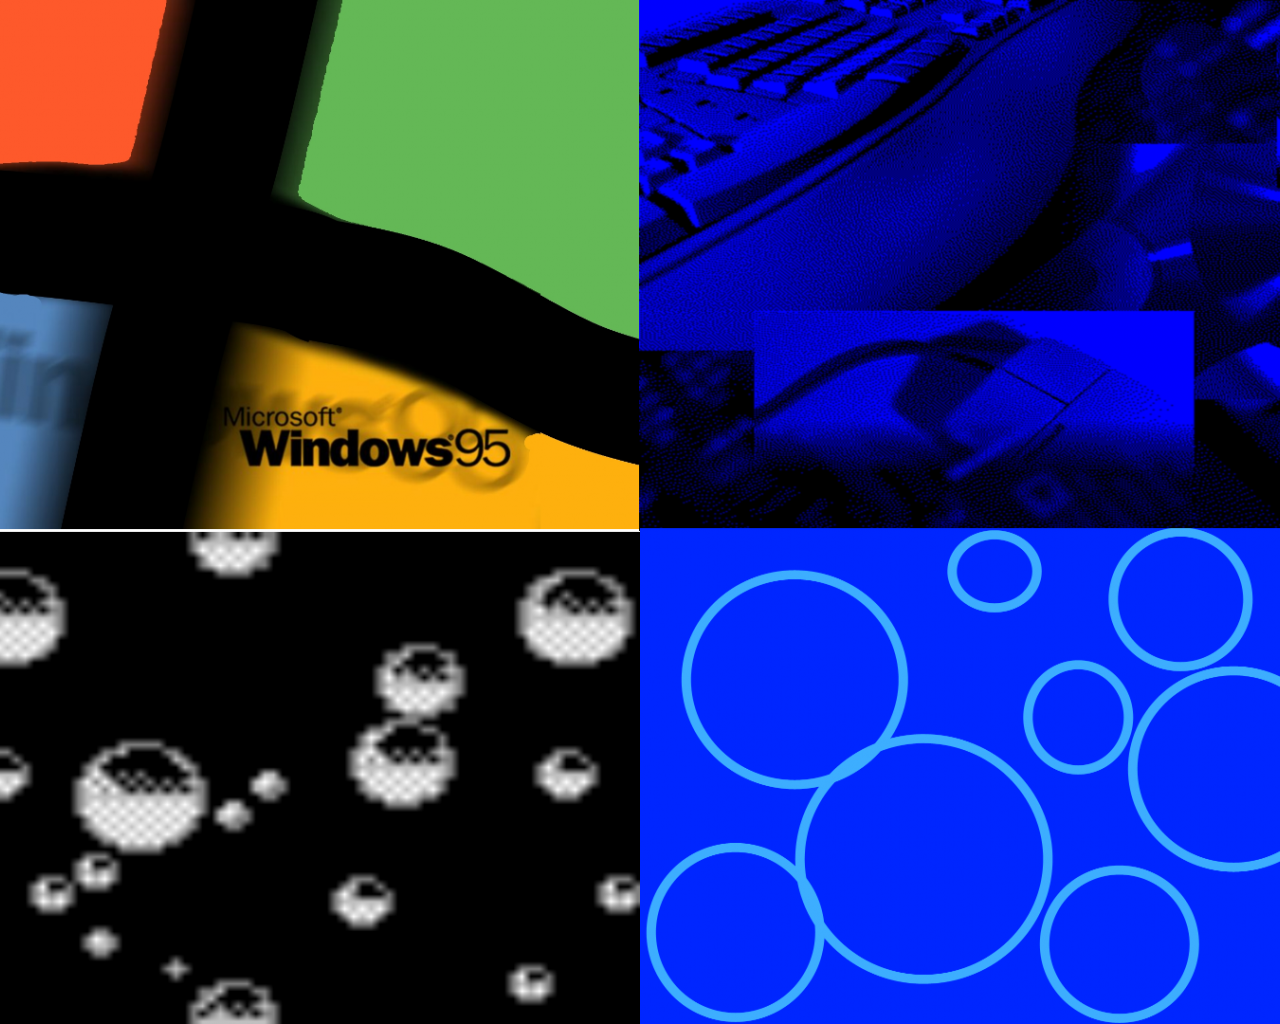 Windows 95 Wallpaper Pack - Windows 95 , HD Wallpaper & Backgrounds